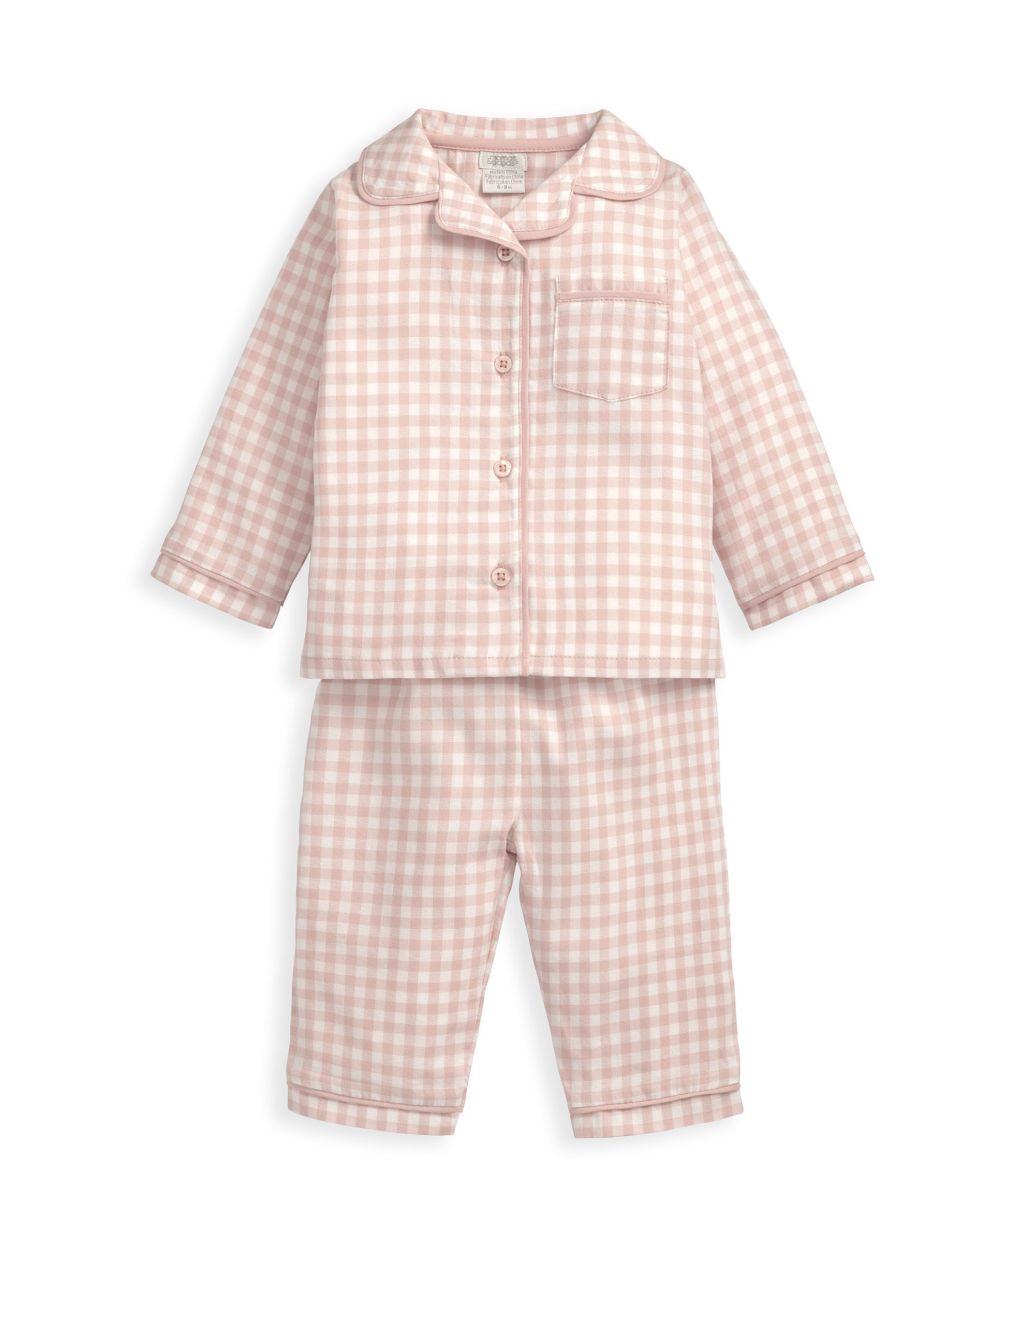 Pink Check Woven Pyjamas (6 Mths-3 yrs) image 1